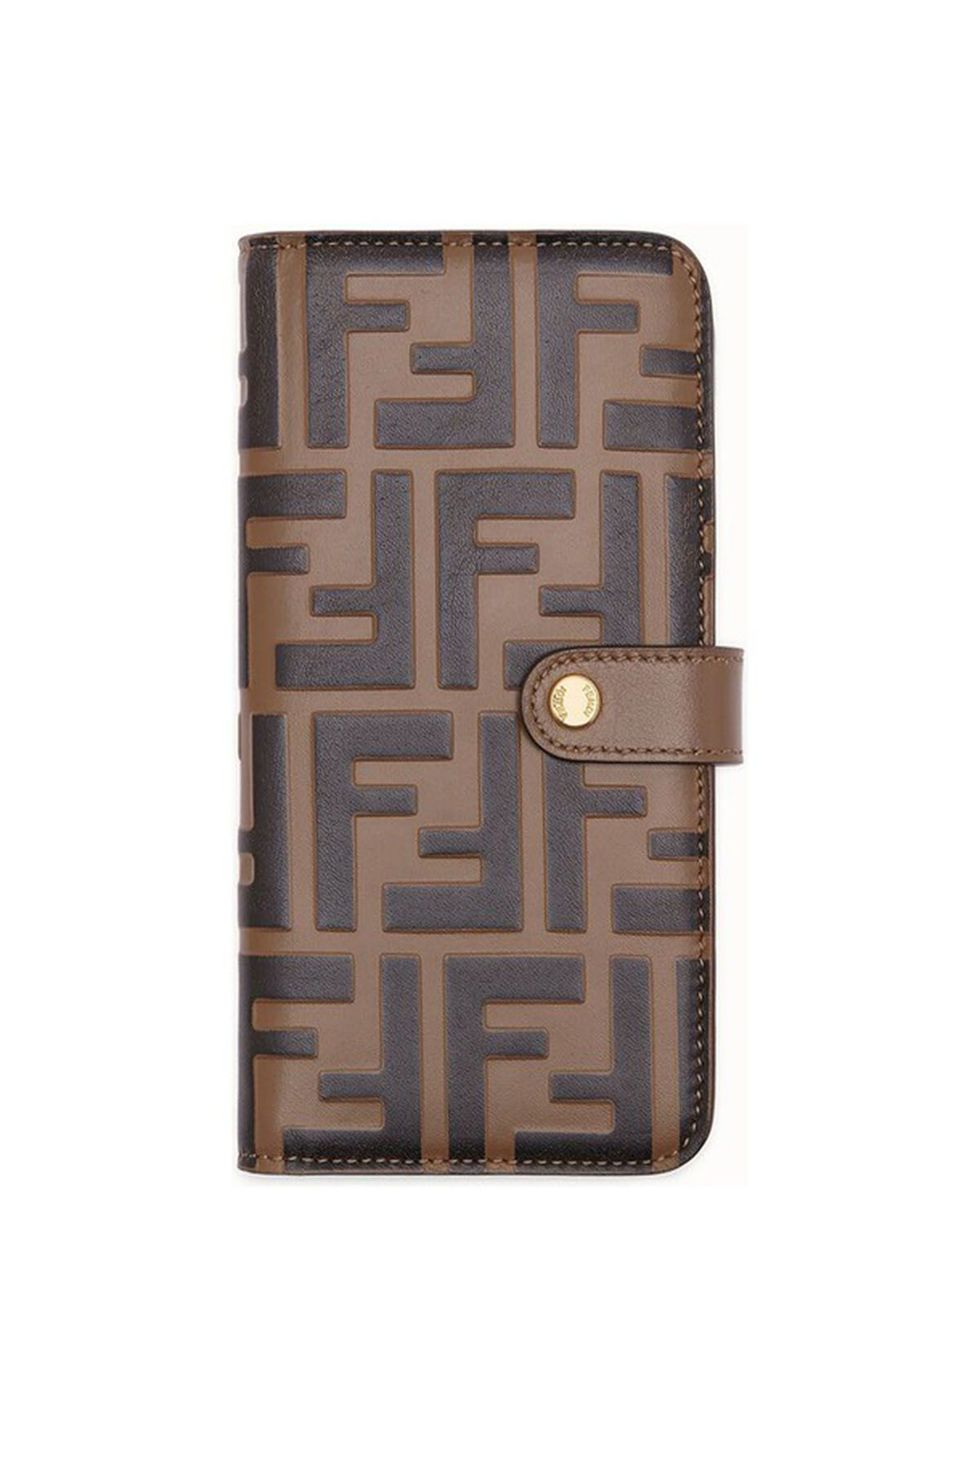 iPhone X Louis Vuitton case  Wallet phone case iphone, Girly phone cases,  Luxury iphone cases